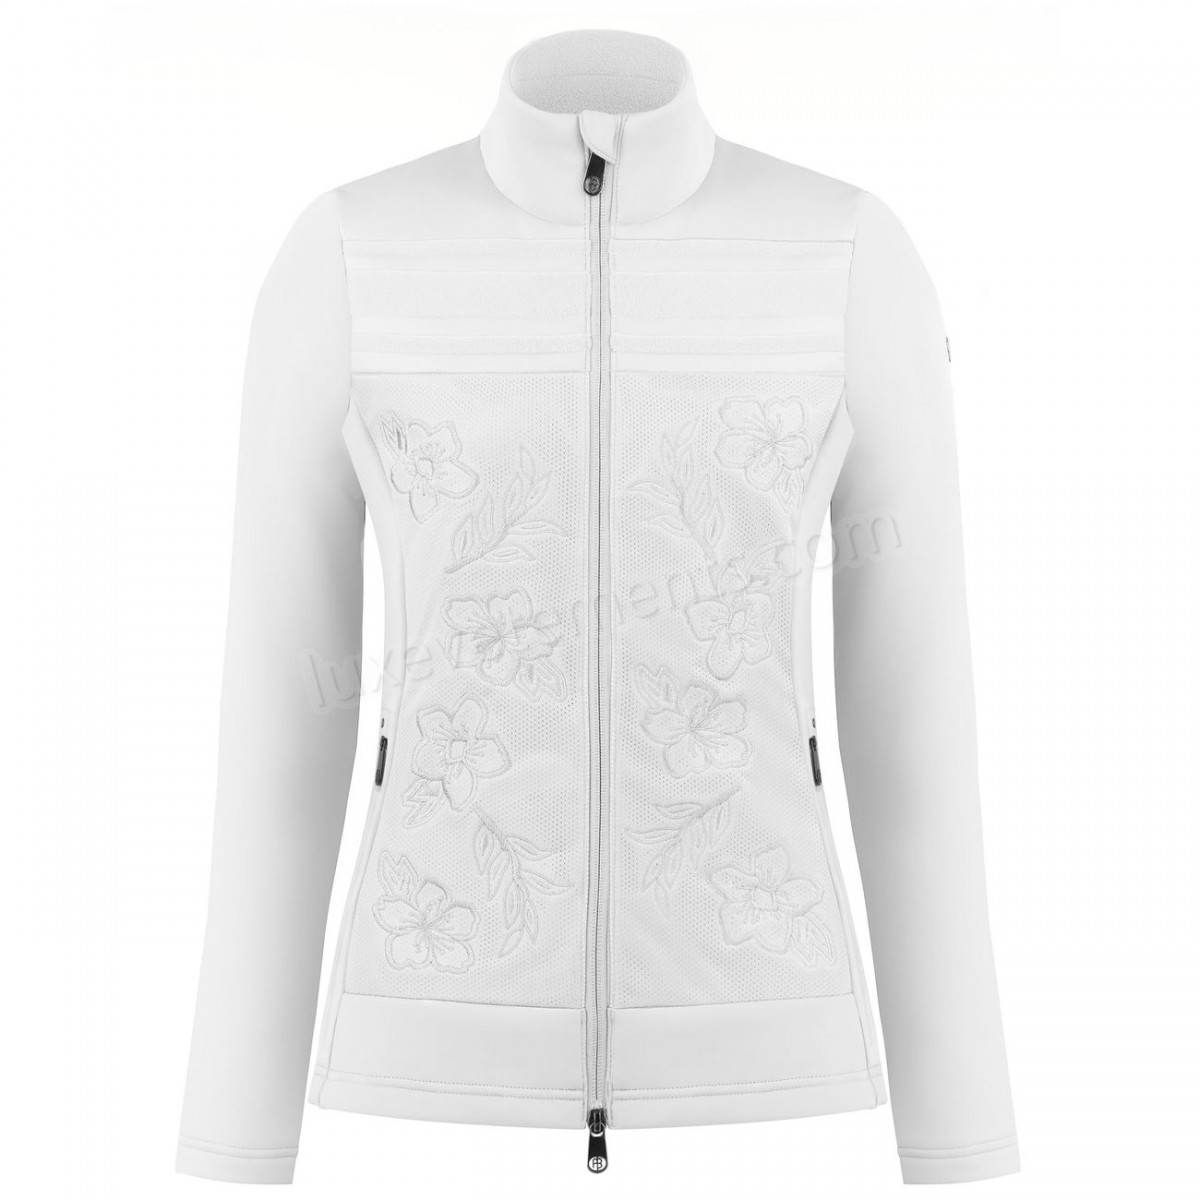 Poivre Blanc-Sports d'hiver femme POIVRE BLANC Veste En Polaire Poivre Blanc Hybrid Stretch Fleece Jacket 1605 White Femme Vente en ligne - -2